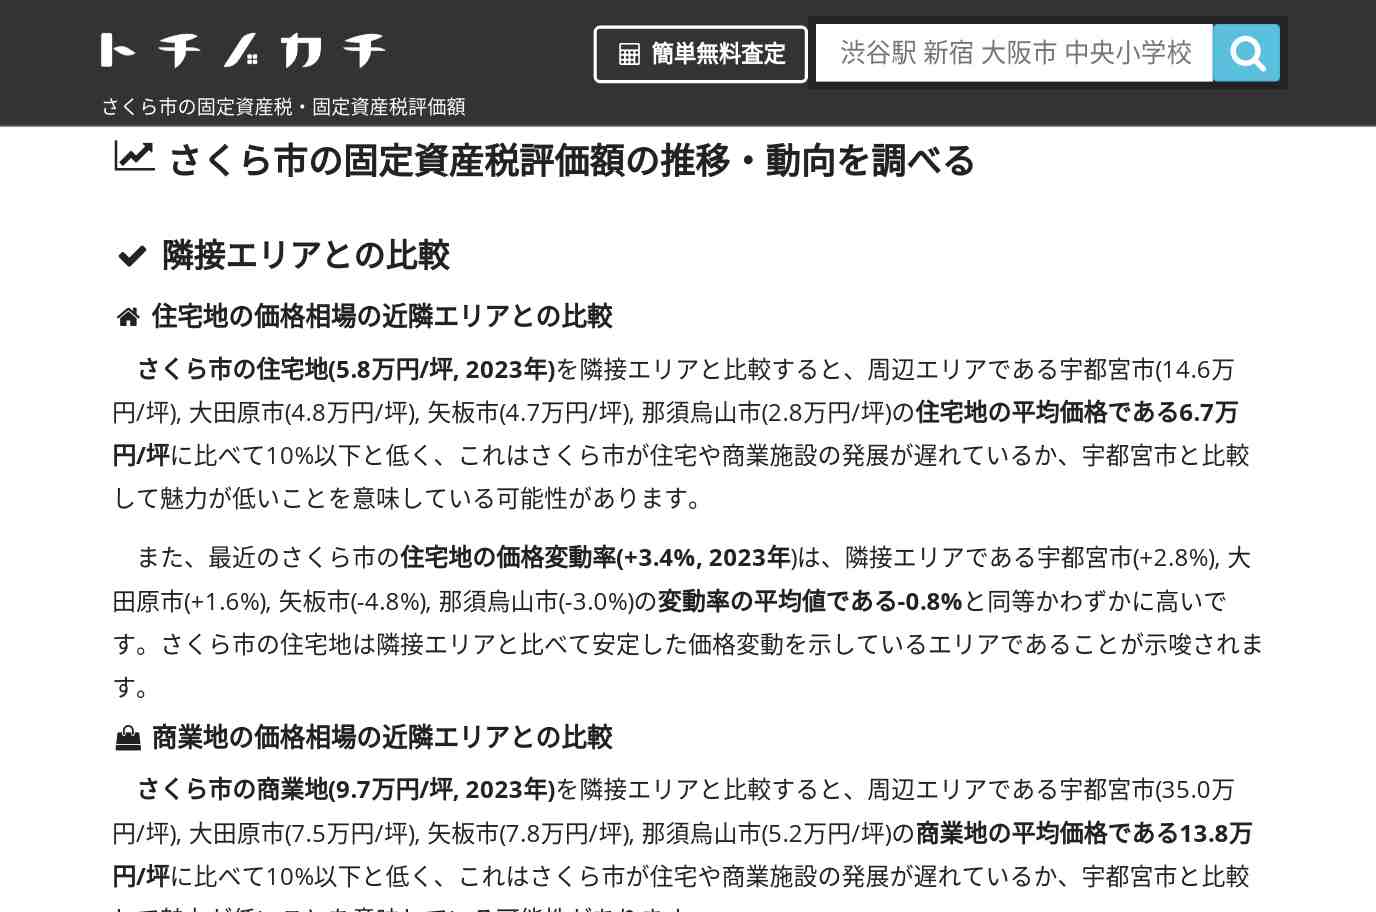 上松山小学校(栃木県 さくら市)周辺の固定資産税・固定資産税評価額 | トチノカチ